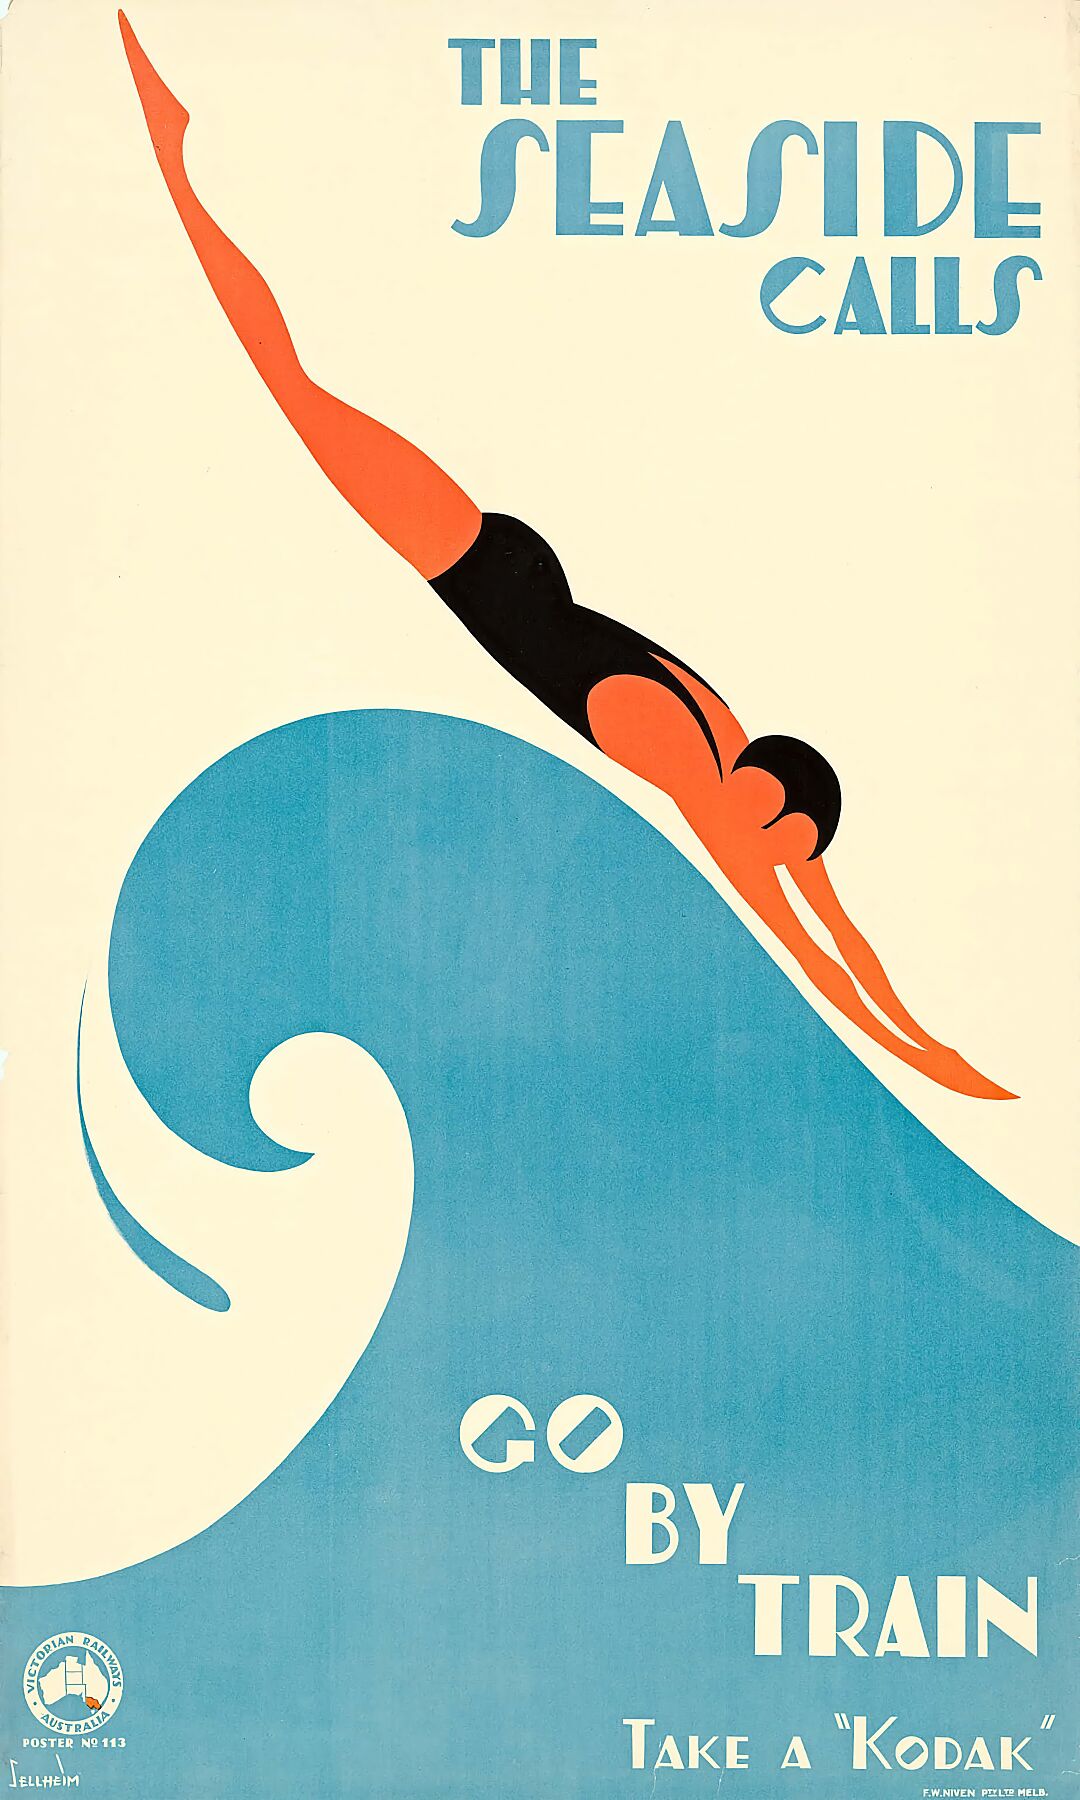 The Seaside Calls by Gert Selheim - 1930s